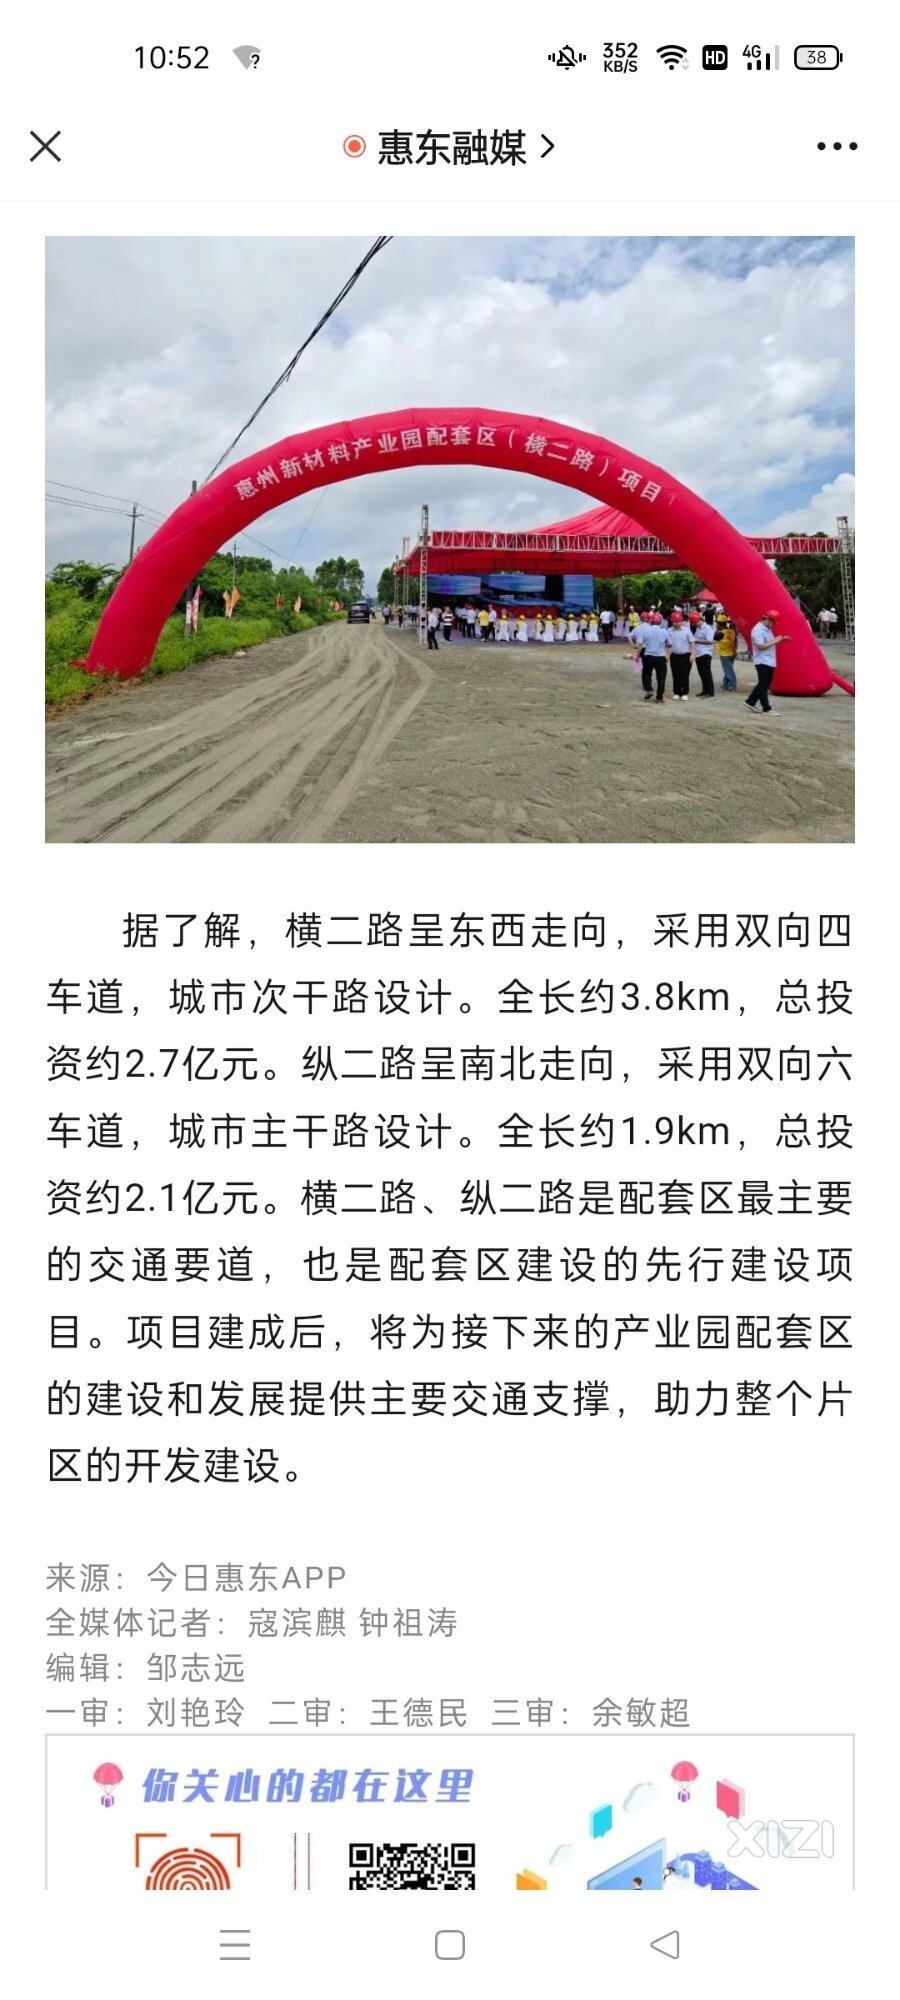 惠州新材料产业园又两条产业大道动工了。弥补工业短板的惠东又发力